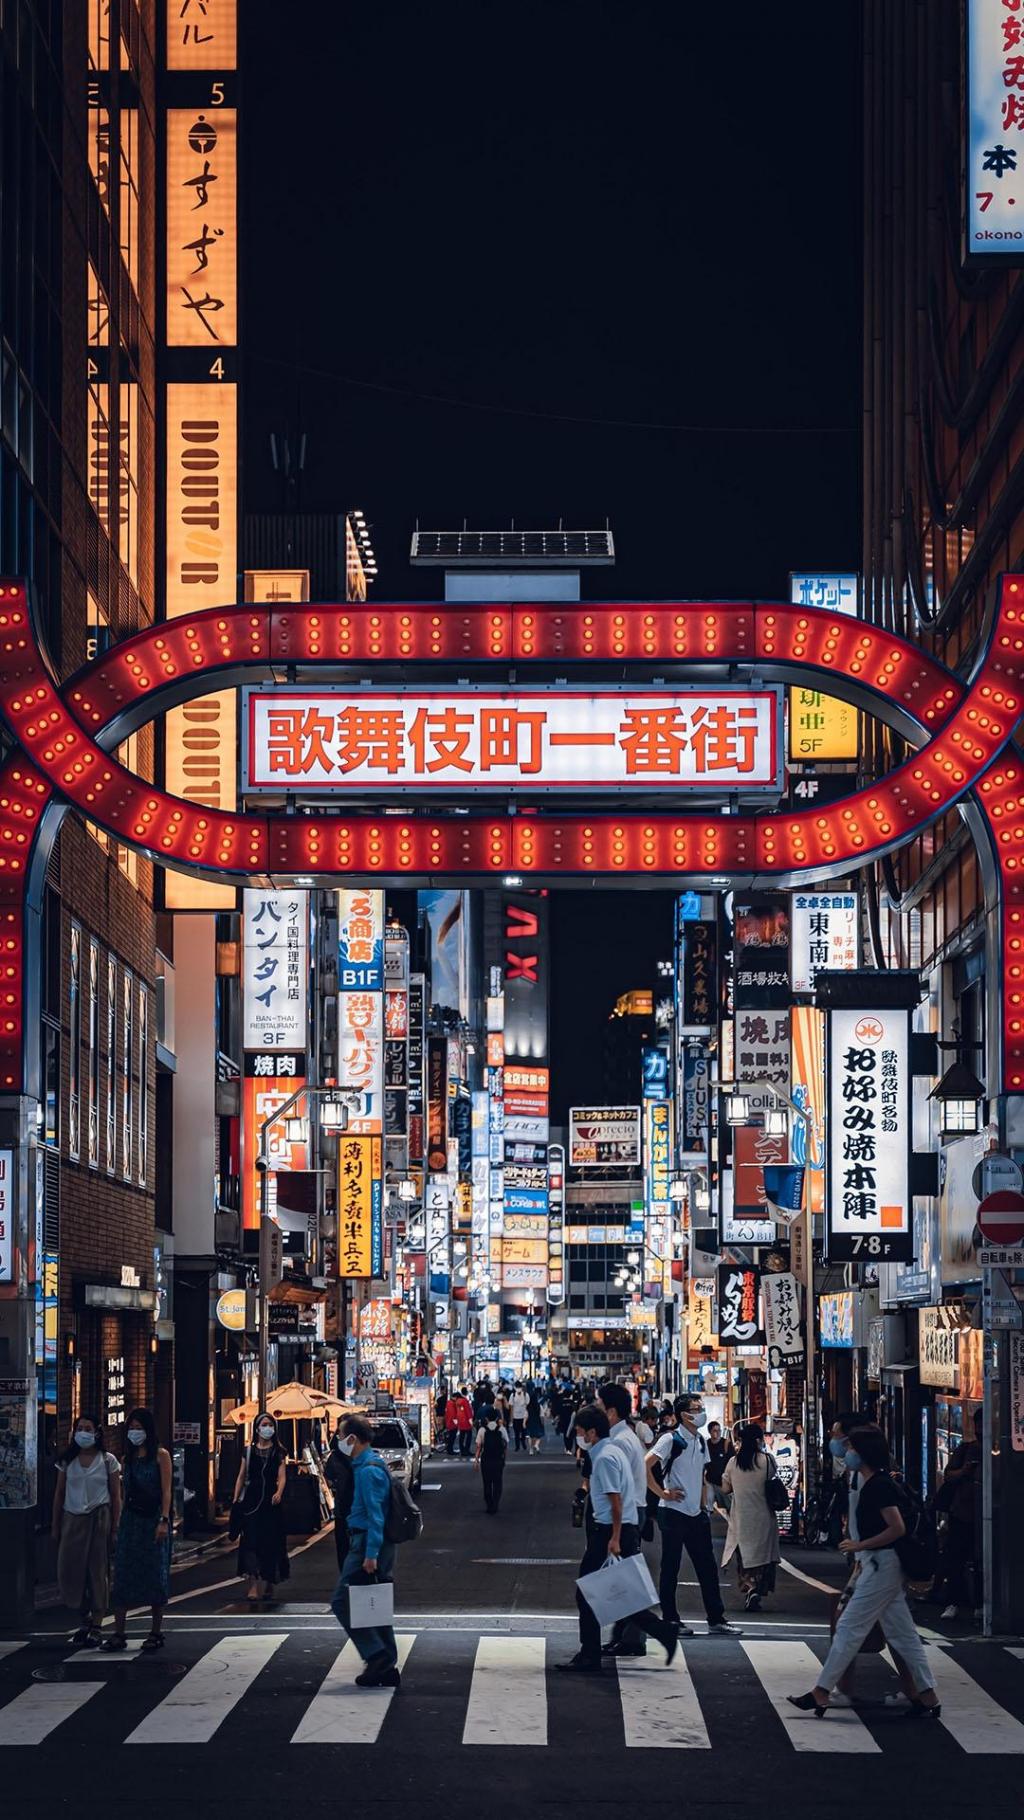 日本霓虹夜晚街景手机壁纸 网页图库手机版